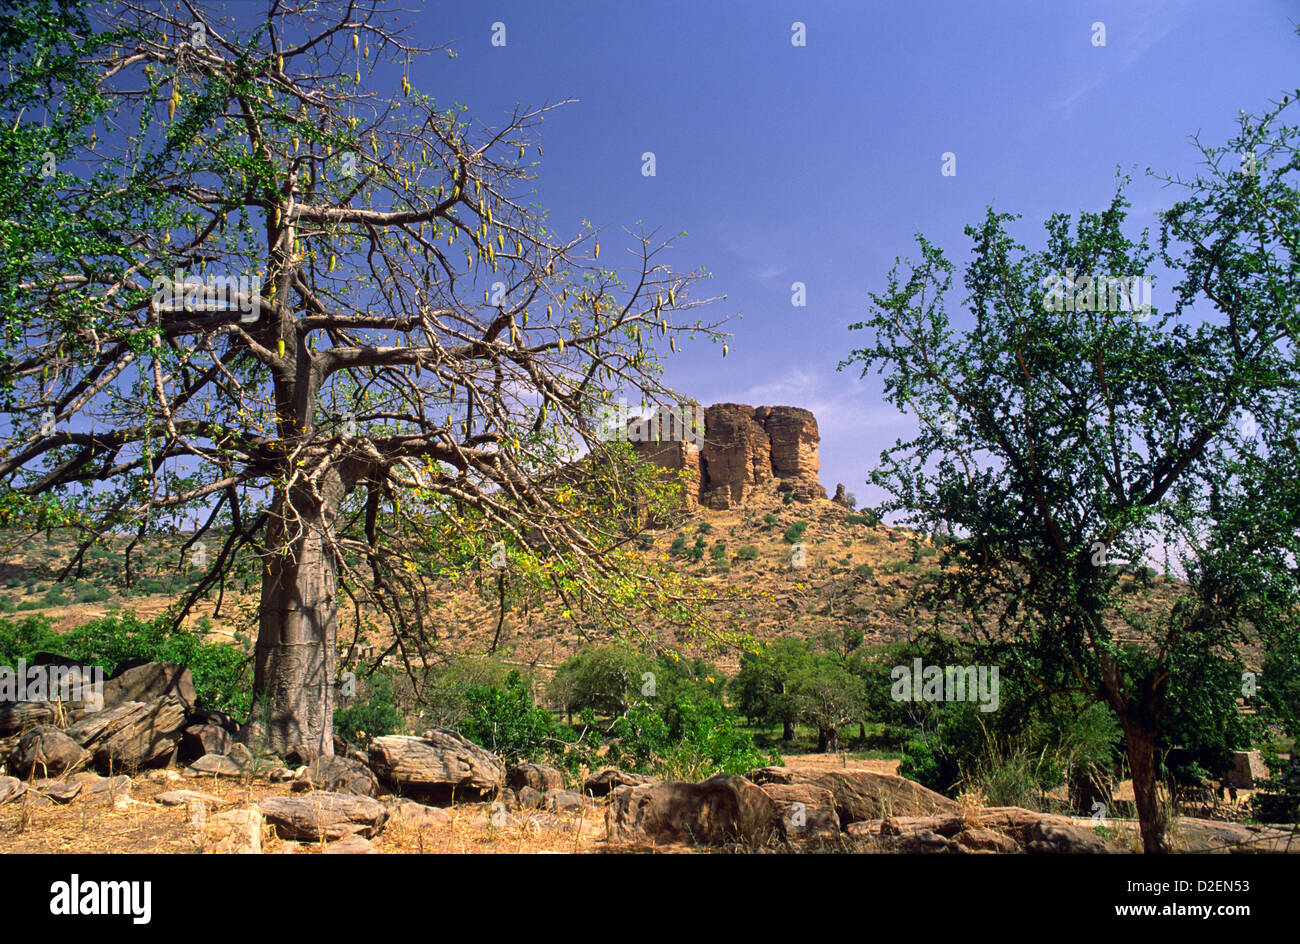 Landscape of the Bandiagara Escarpment in Mali, West Africa. Stock Photo